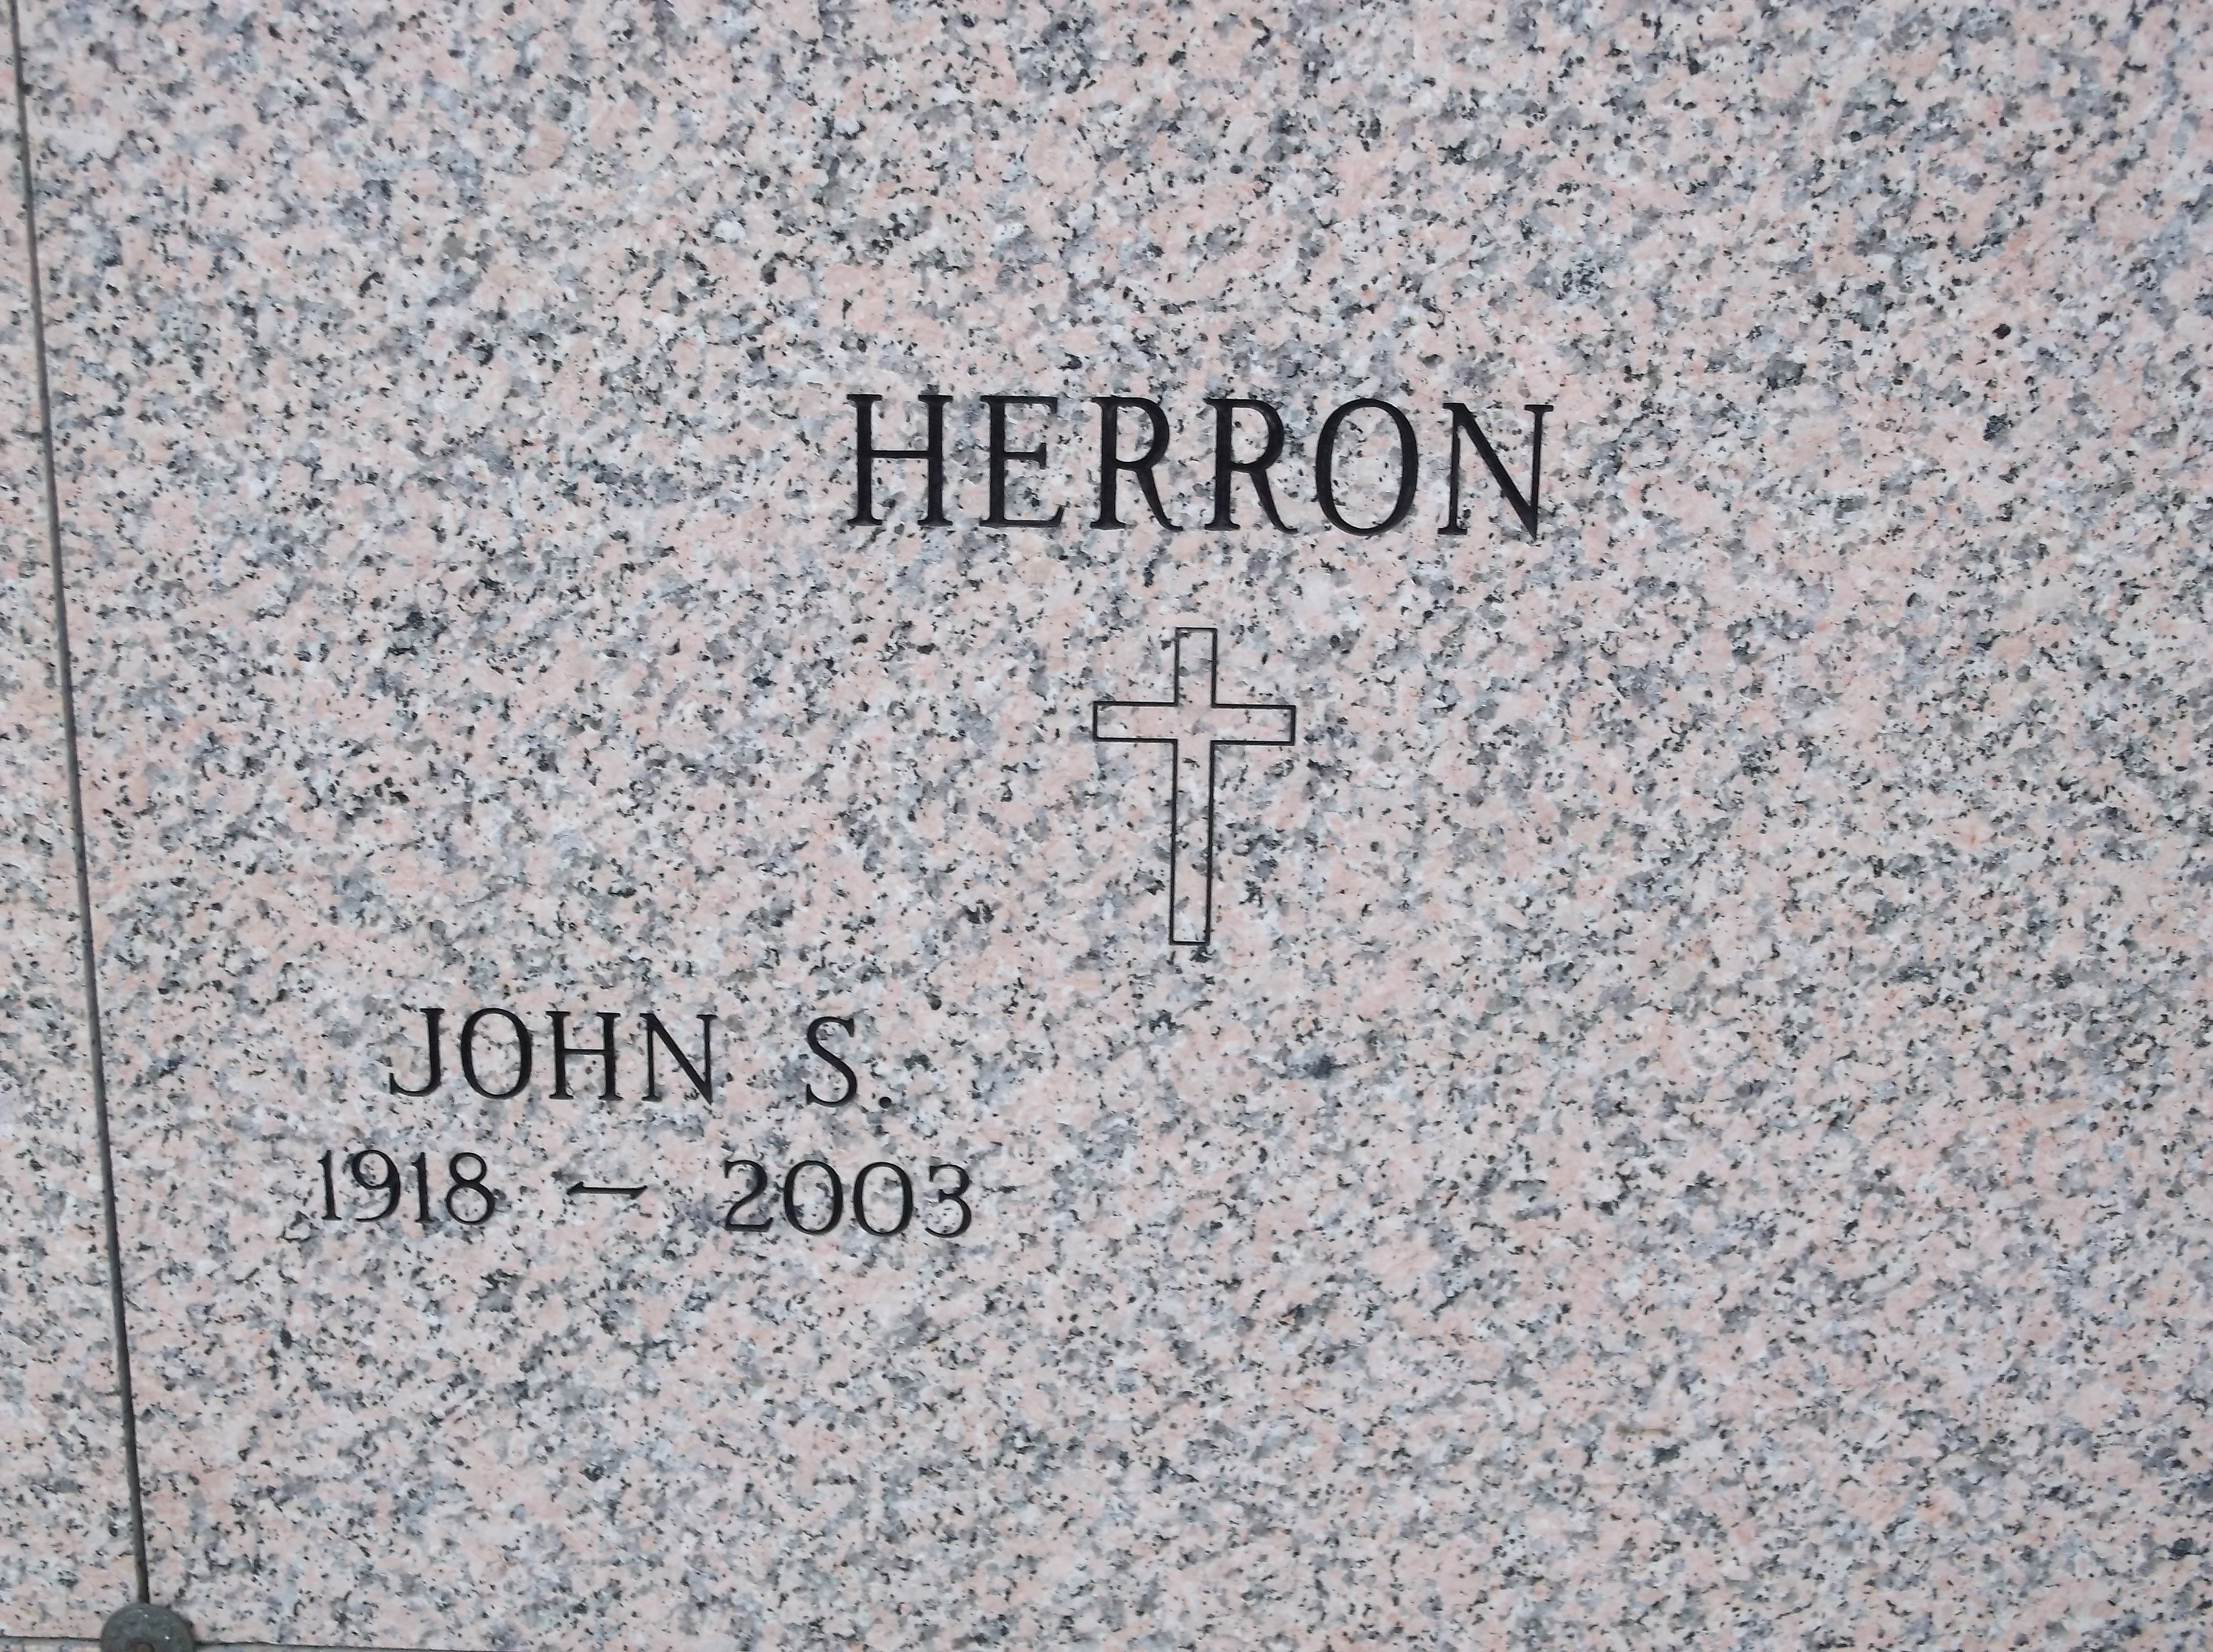 John S Herron